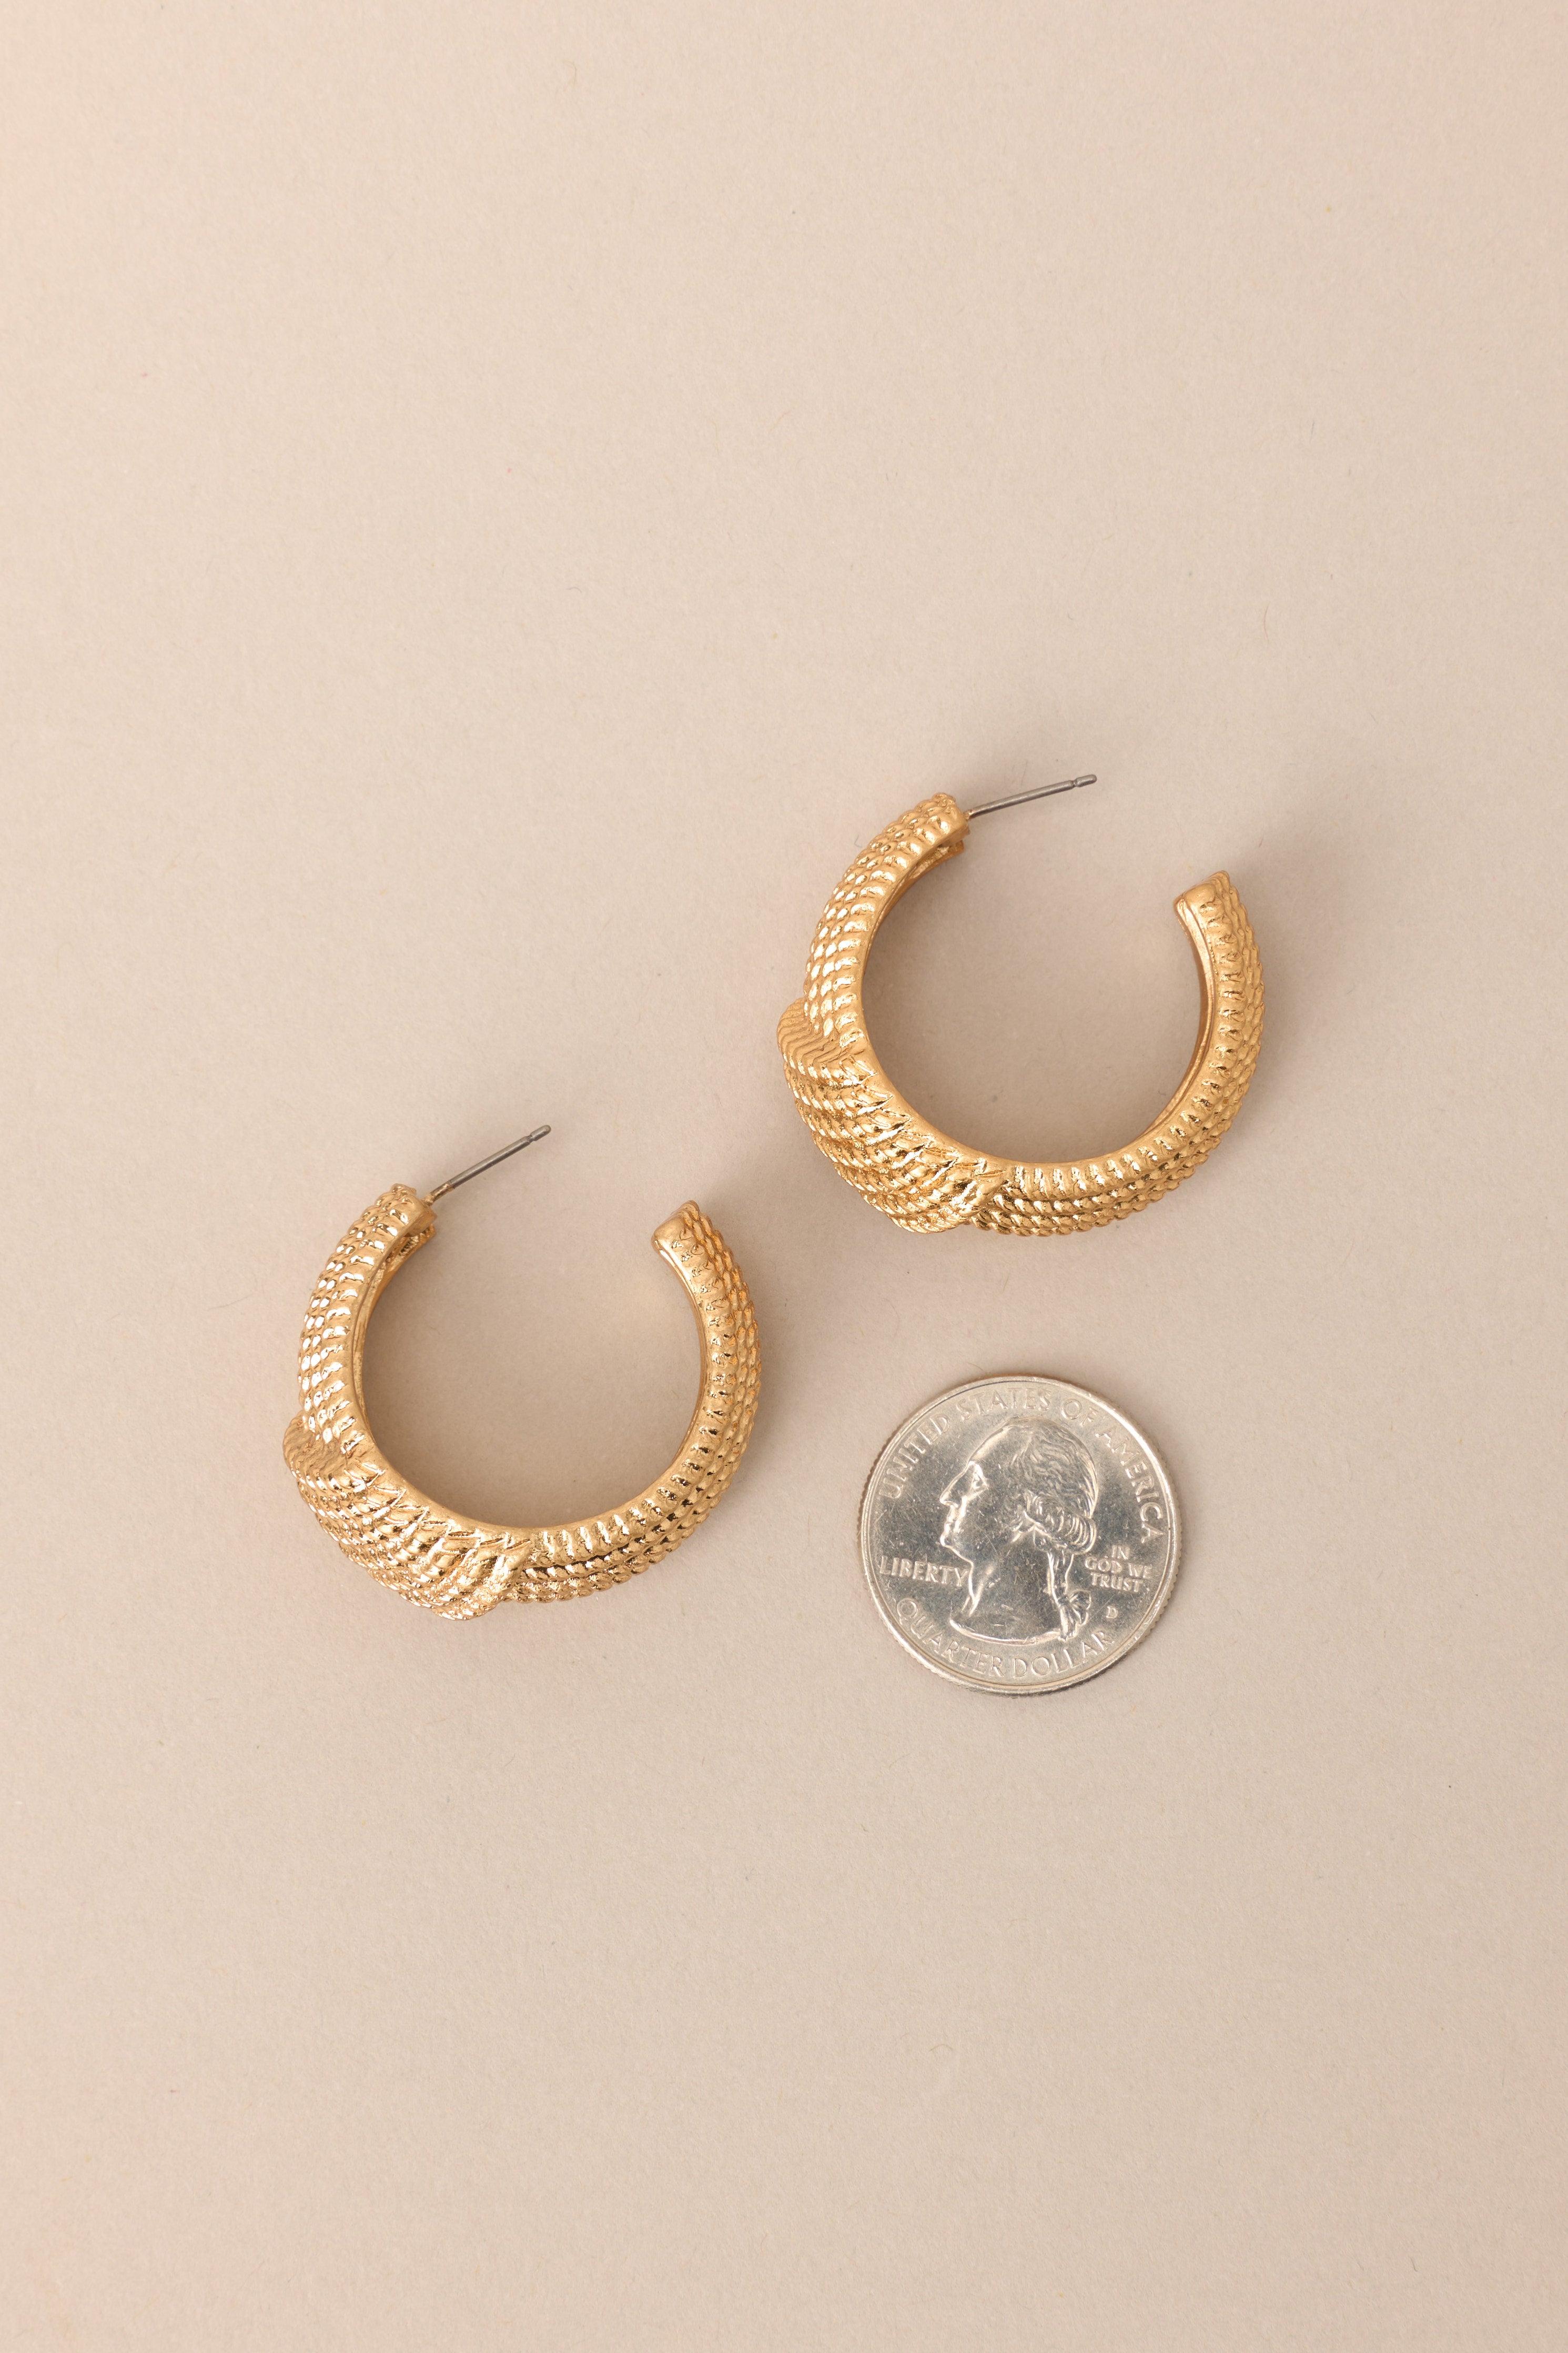 This Life Textured Vintage Gold Hoop Earrings